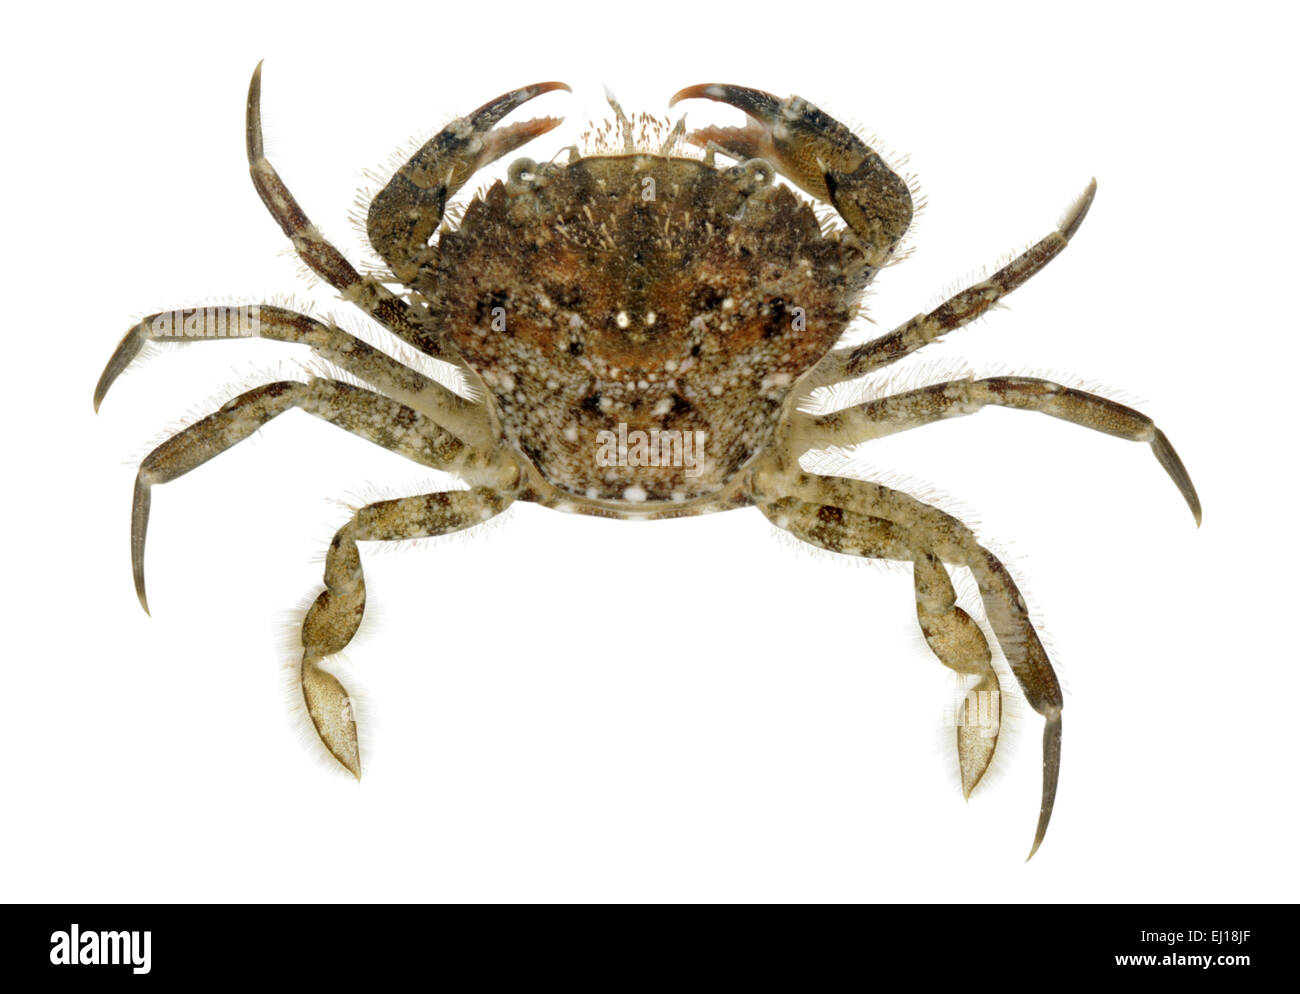 Arch-fronted Swimming Crab - Liocarcinus arcuatus Stock Photo